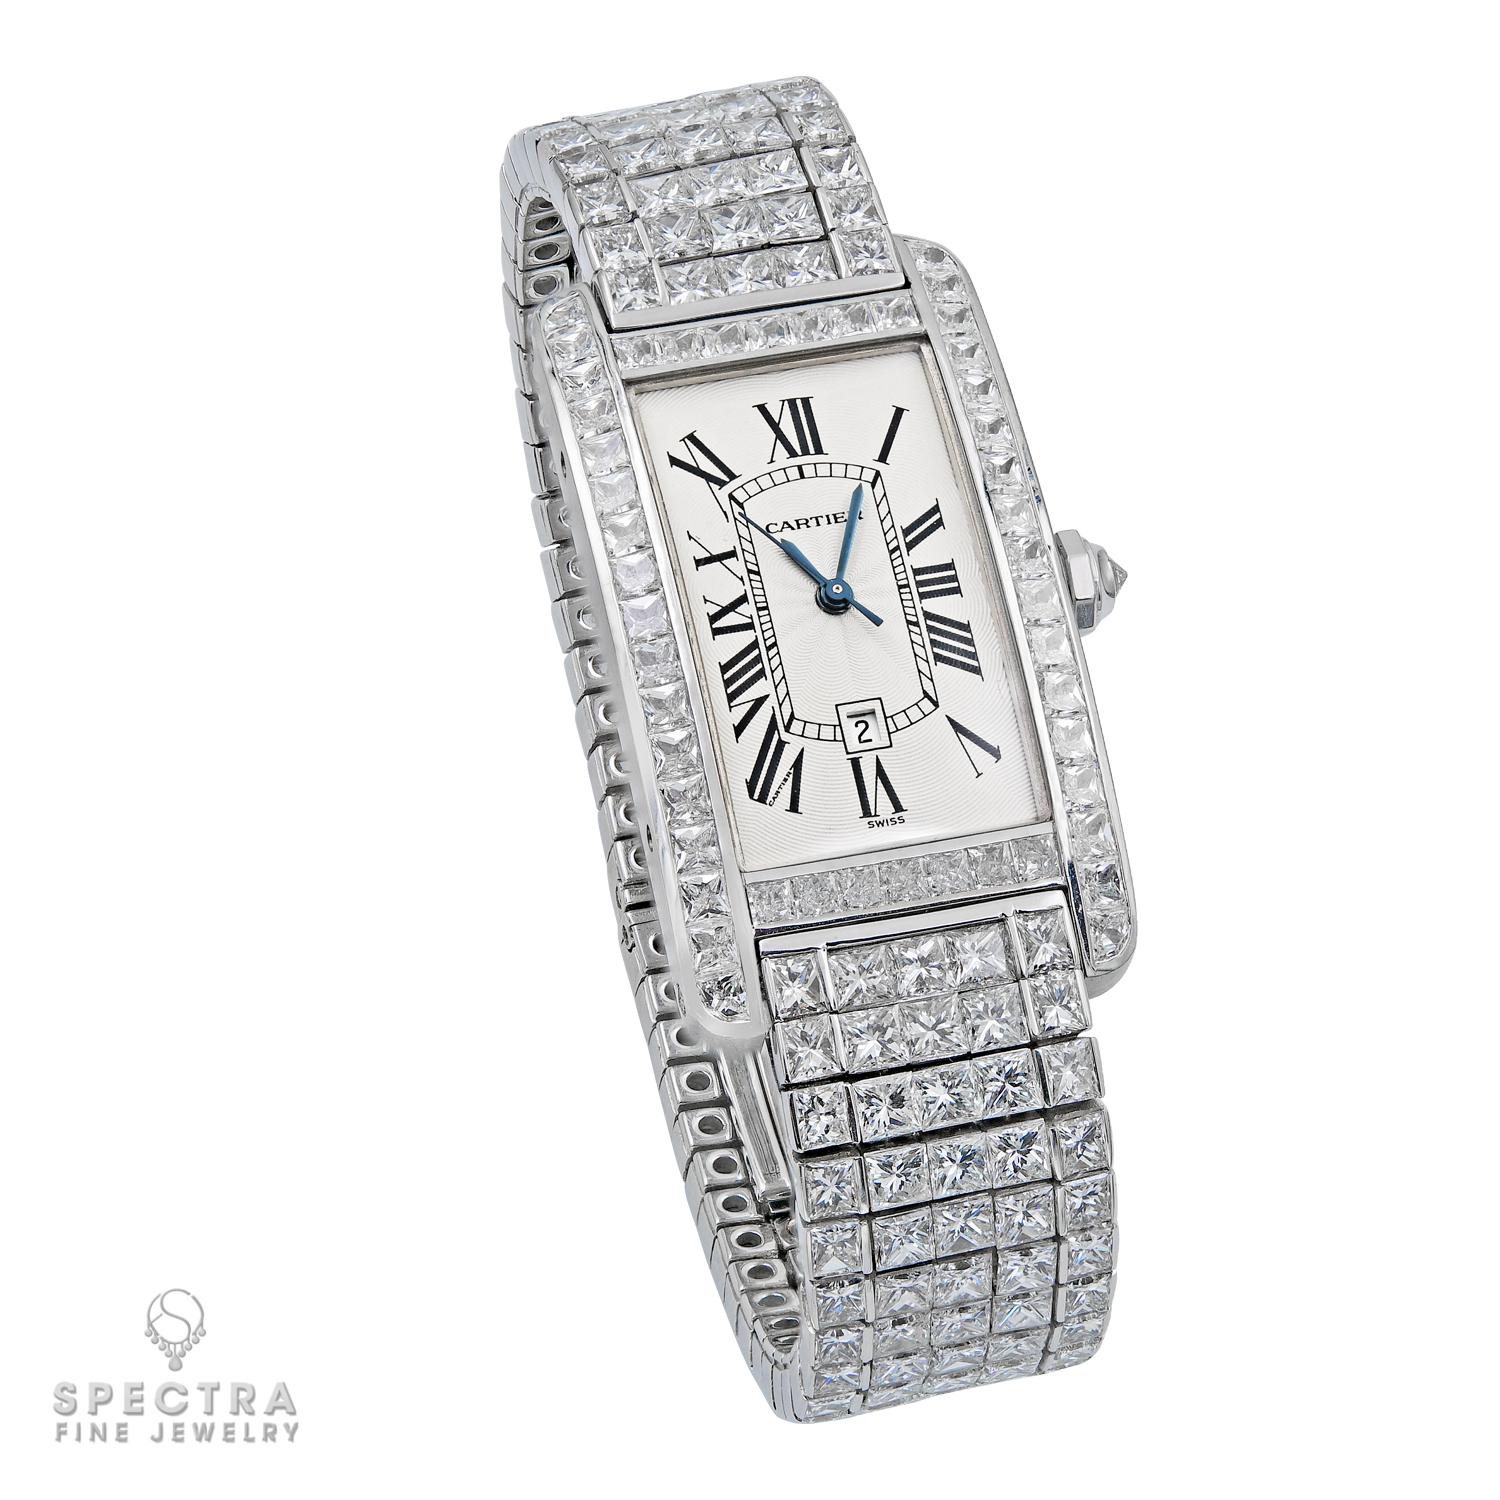 Die Cartier Tank Américaine Diamond Watch ist ein wahres Meisterwerk der Uhrmacherkunst. Das rechteckige, in den Motor gedrehte Zifferblatt mit römischen Ziffern ist eine zeitlose Leinwand für den Tanz der Zeit. Aber es sind die Lünette und das